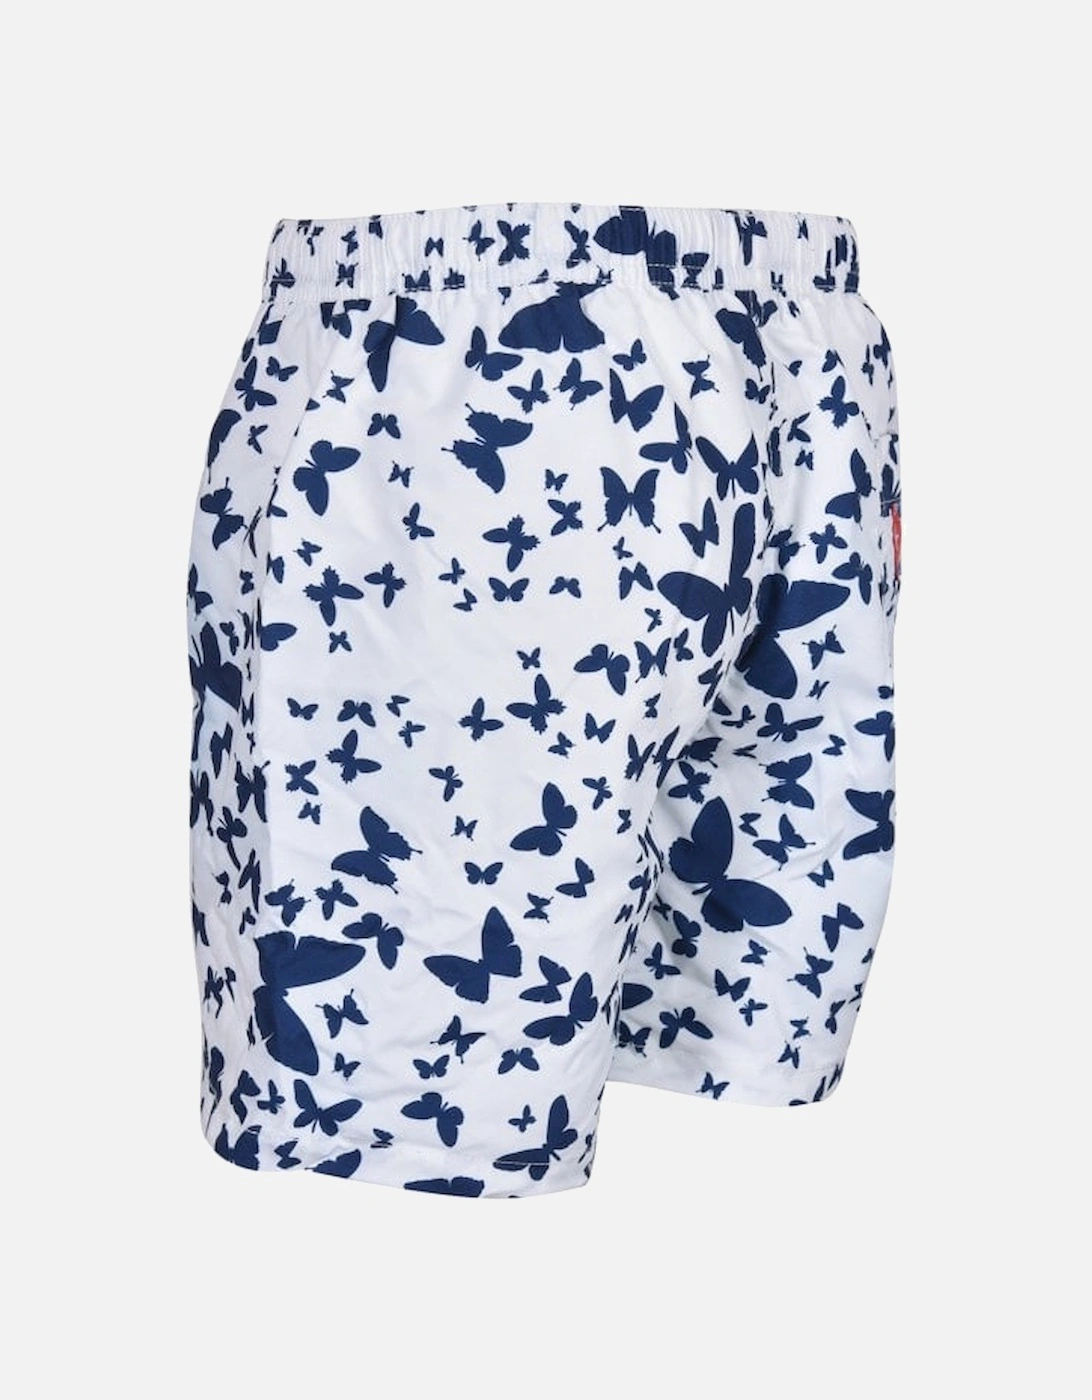 Butterfly Print Boys Swim Shorts, White/Navy